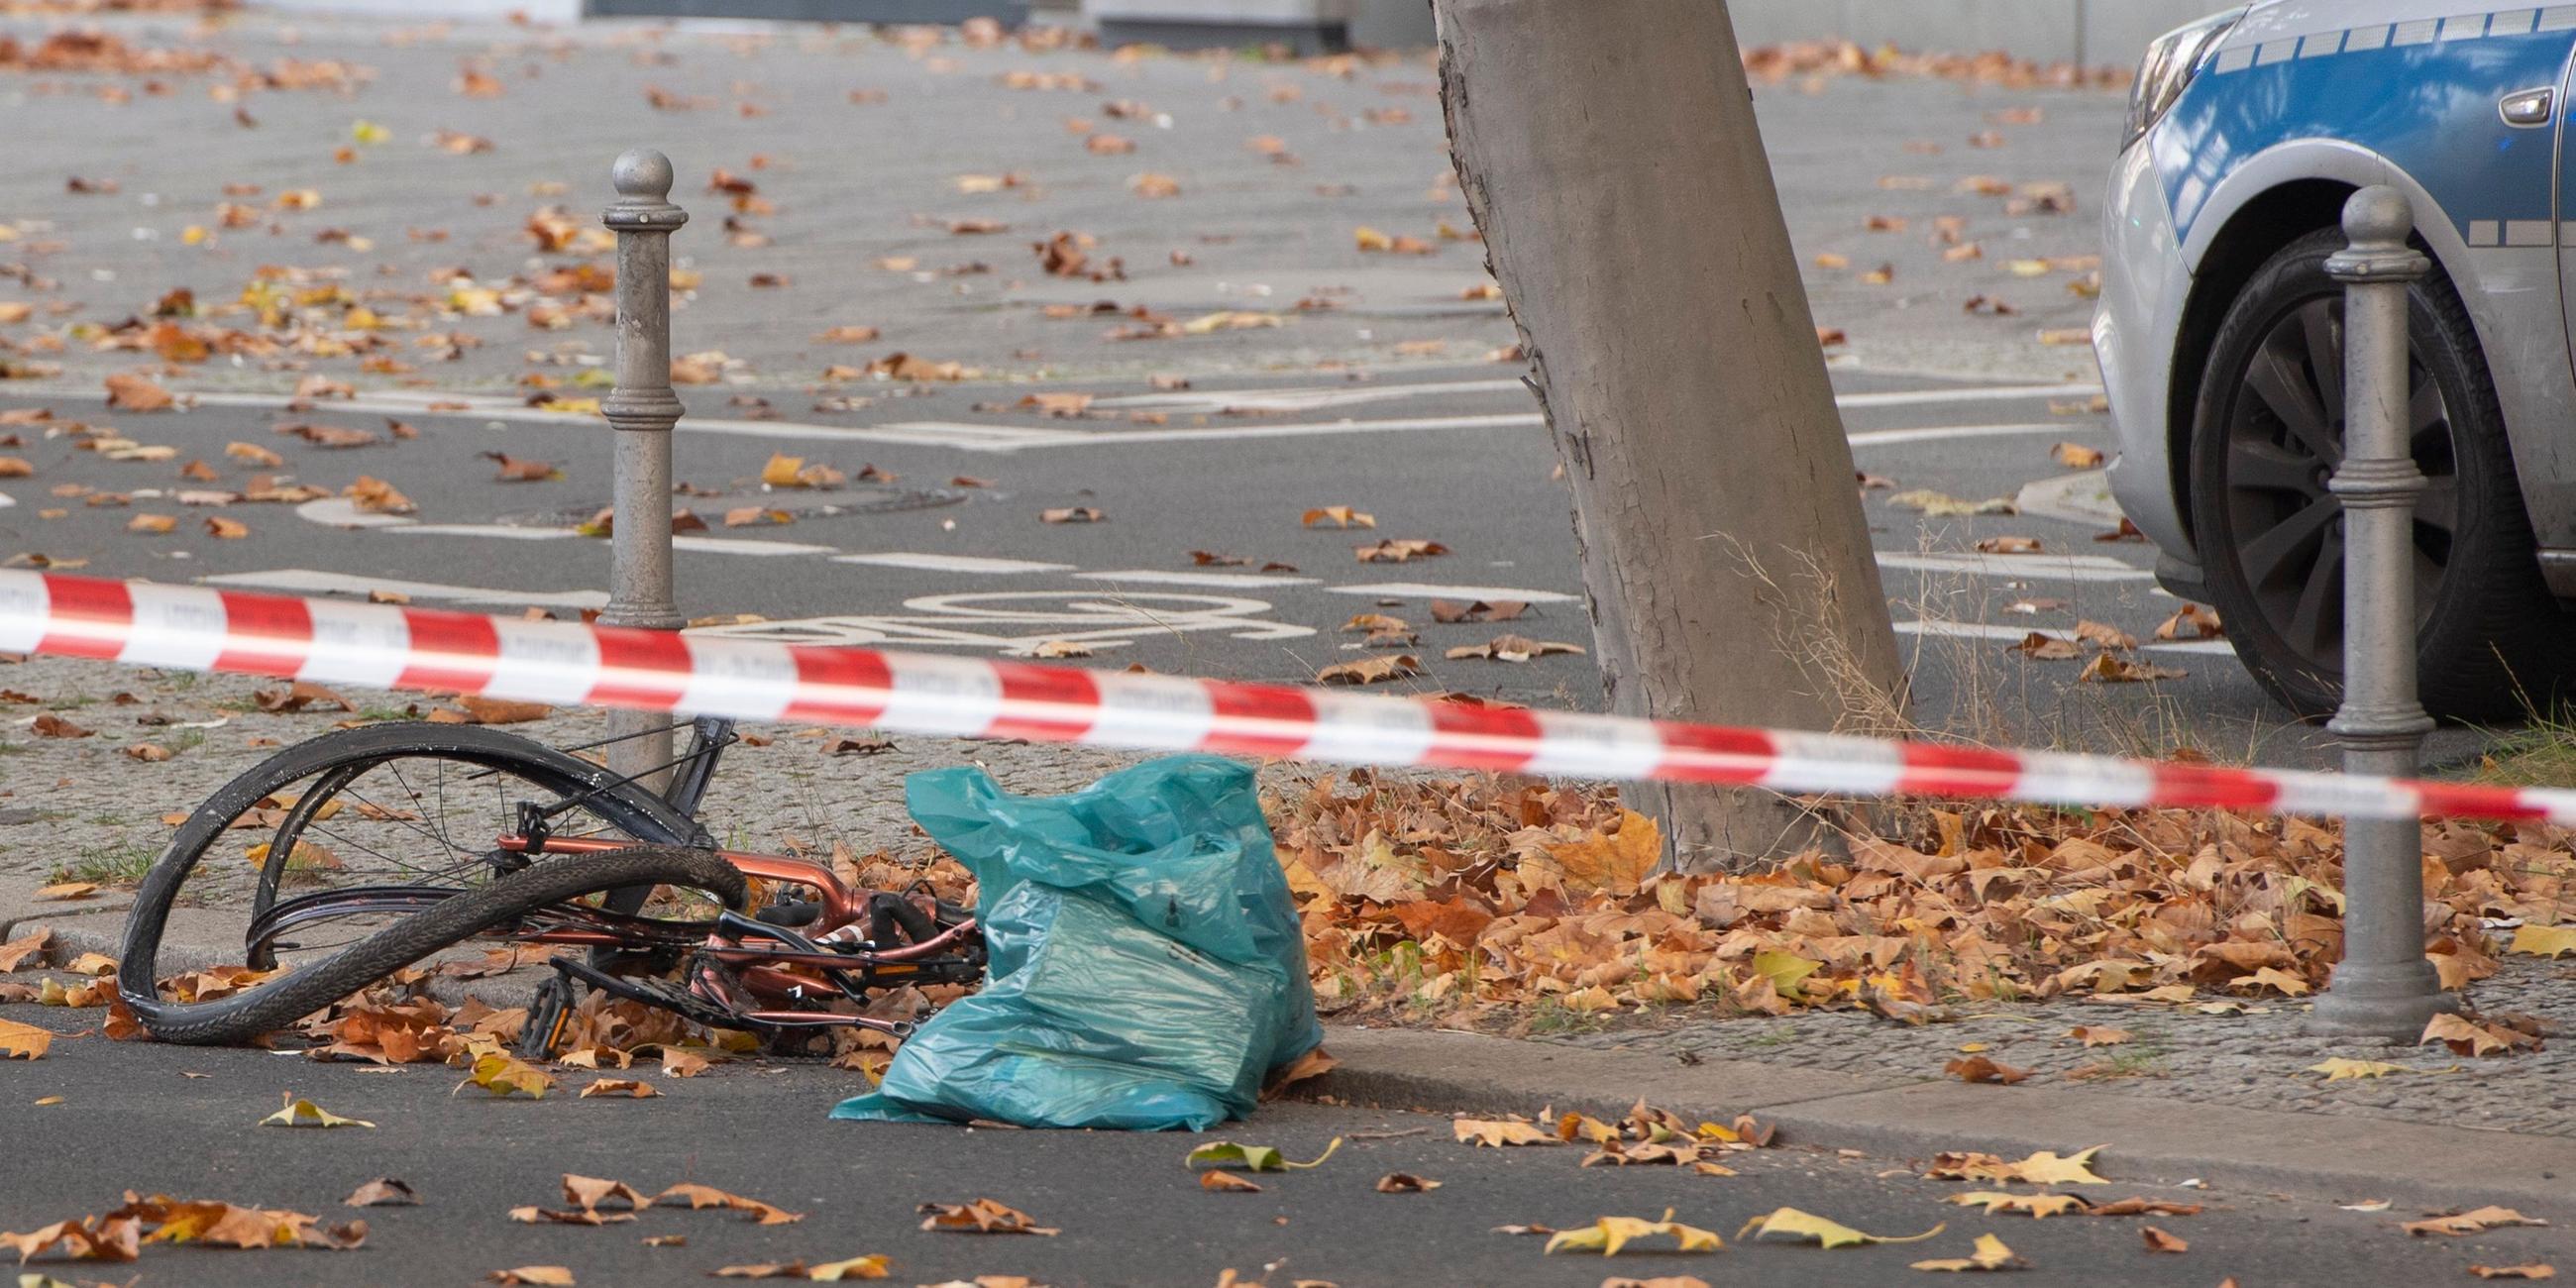 Archiv: Ein zerstörtes Fahrrad liegt auf der Bundesallee in Berlin-Wilmersdorf. Drei Tage nach dem Unfall mit einem Betonmischer in Berlin ist die lebensgefährlich verletzte Radfahrerin für hirntot erklärt worden.